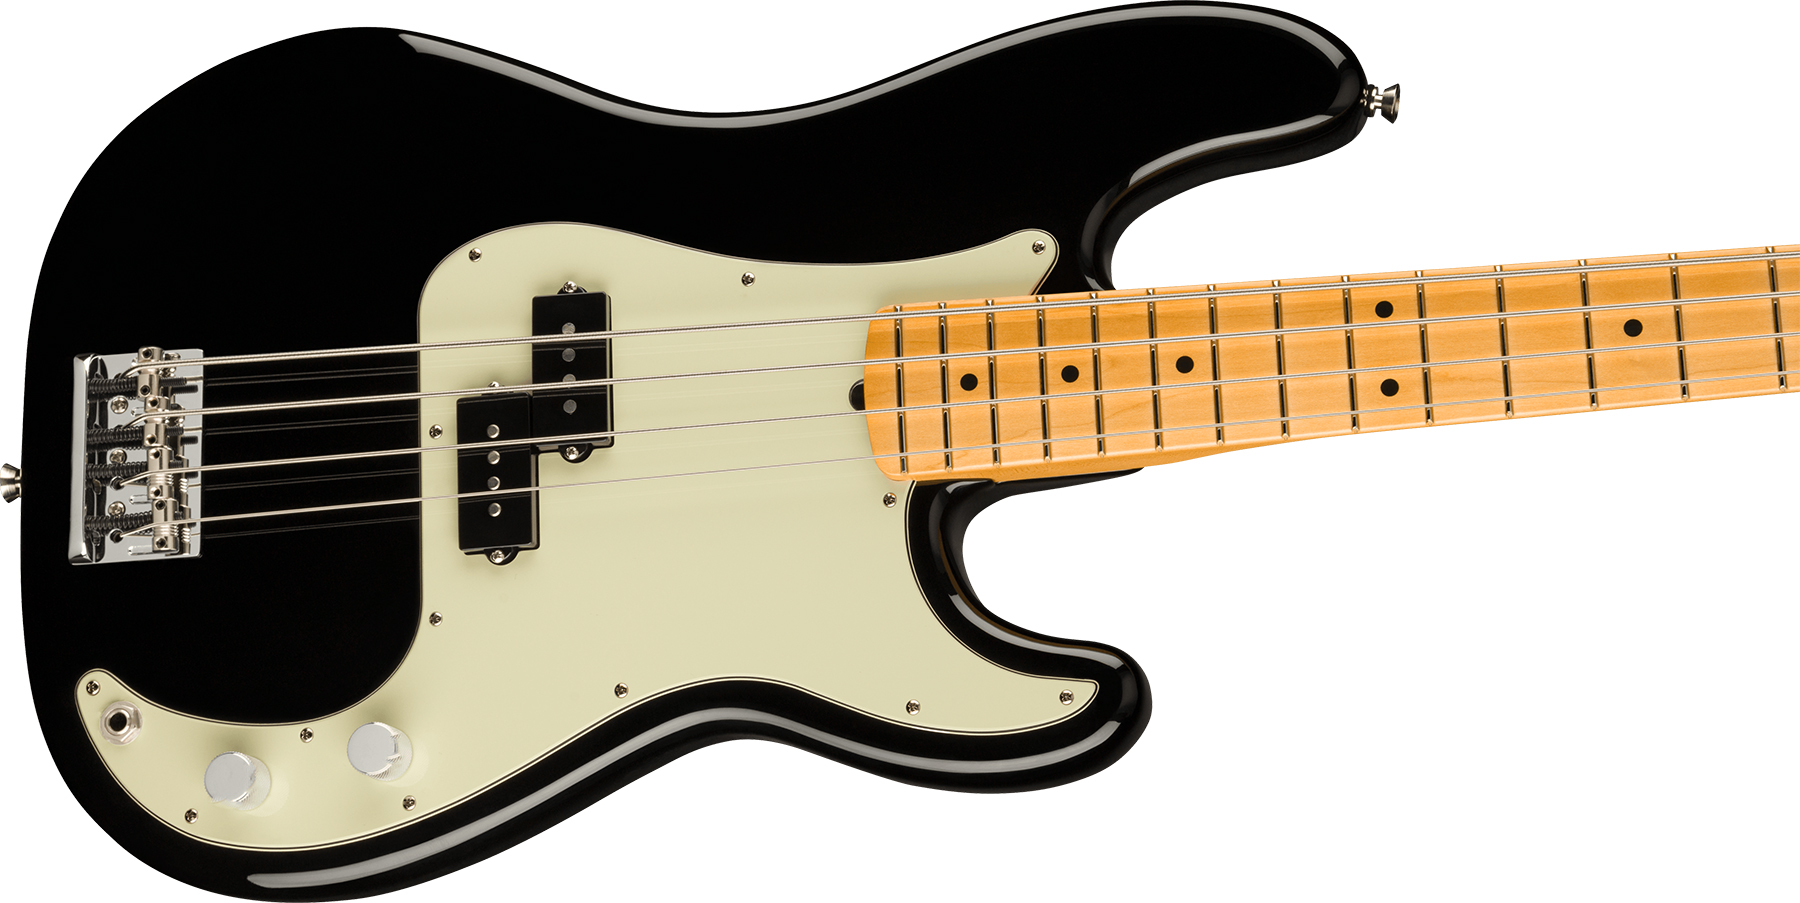 Fender Precision Bass American Professional Ii Usa Mn - Black - Bajo eléctrico de cuerpo sólido - Variation 2